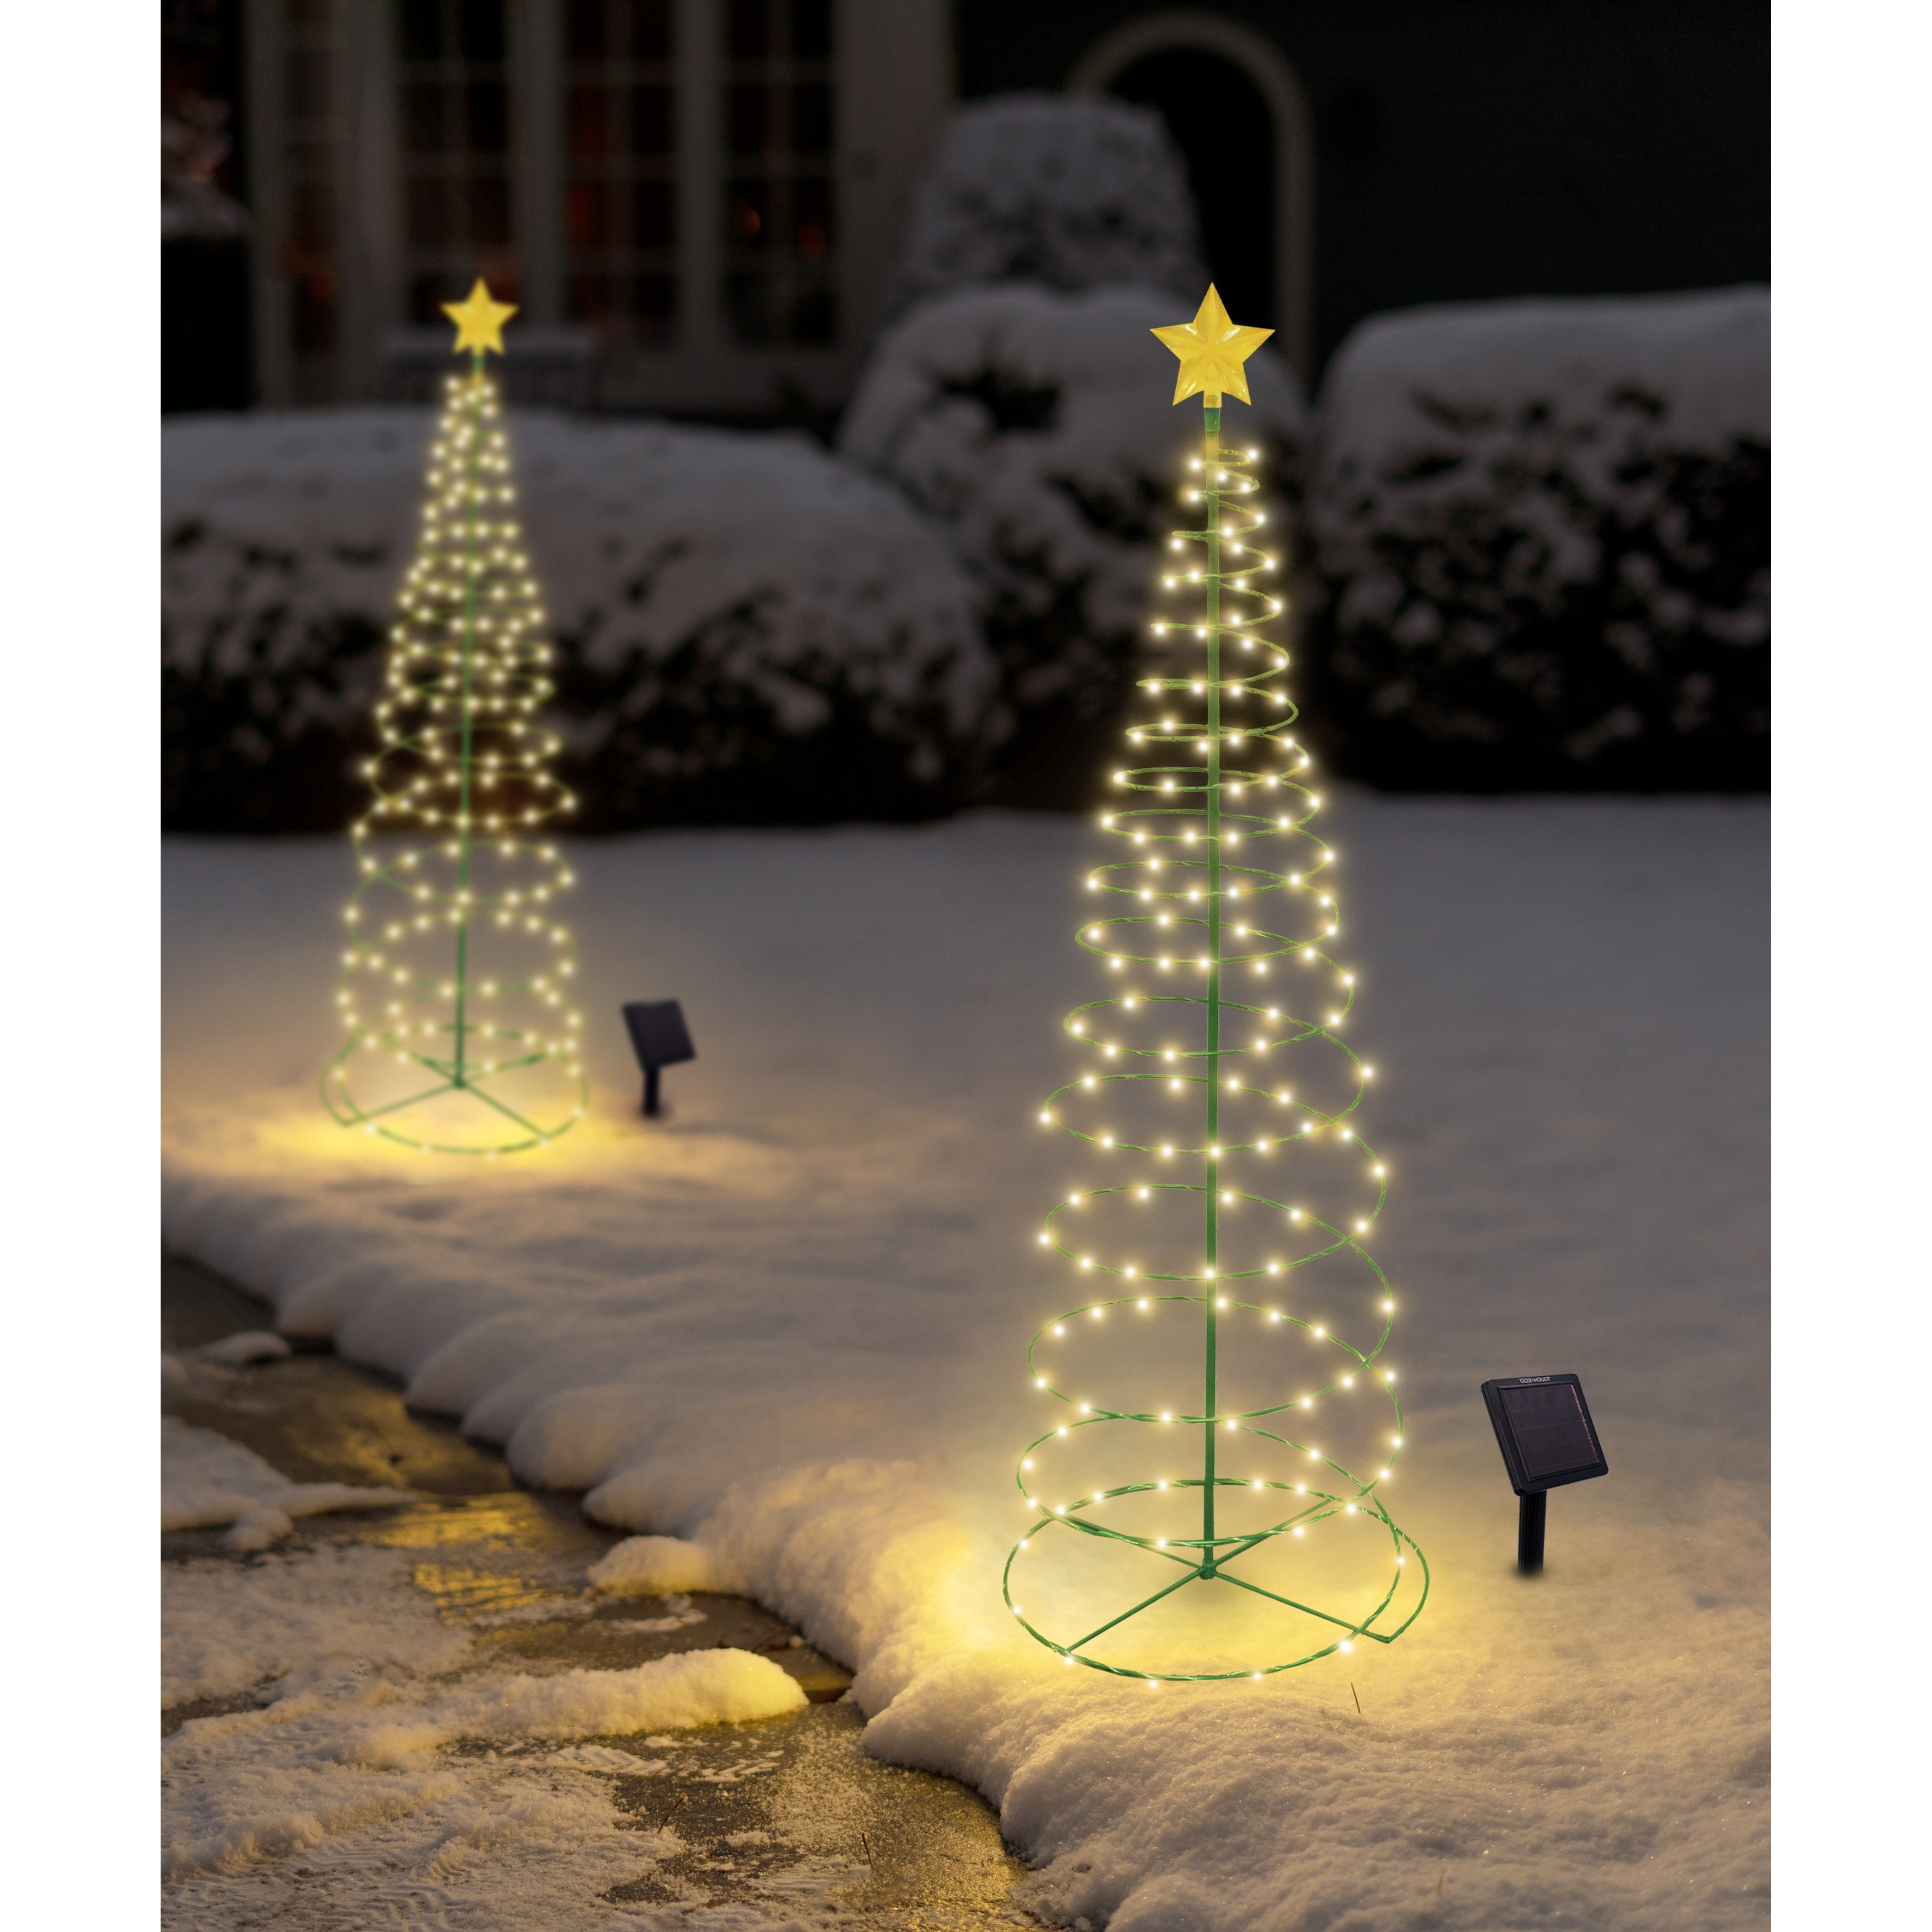 Solar LED Metal 4-foot Christmas Tree Light Decoration - On Sale